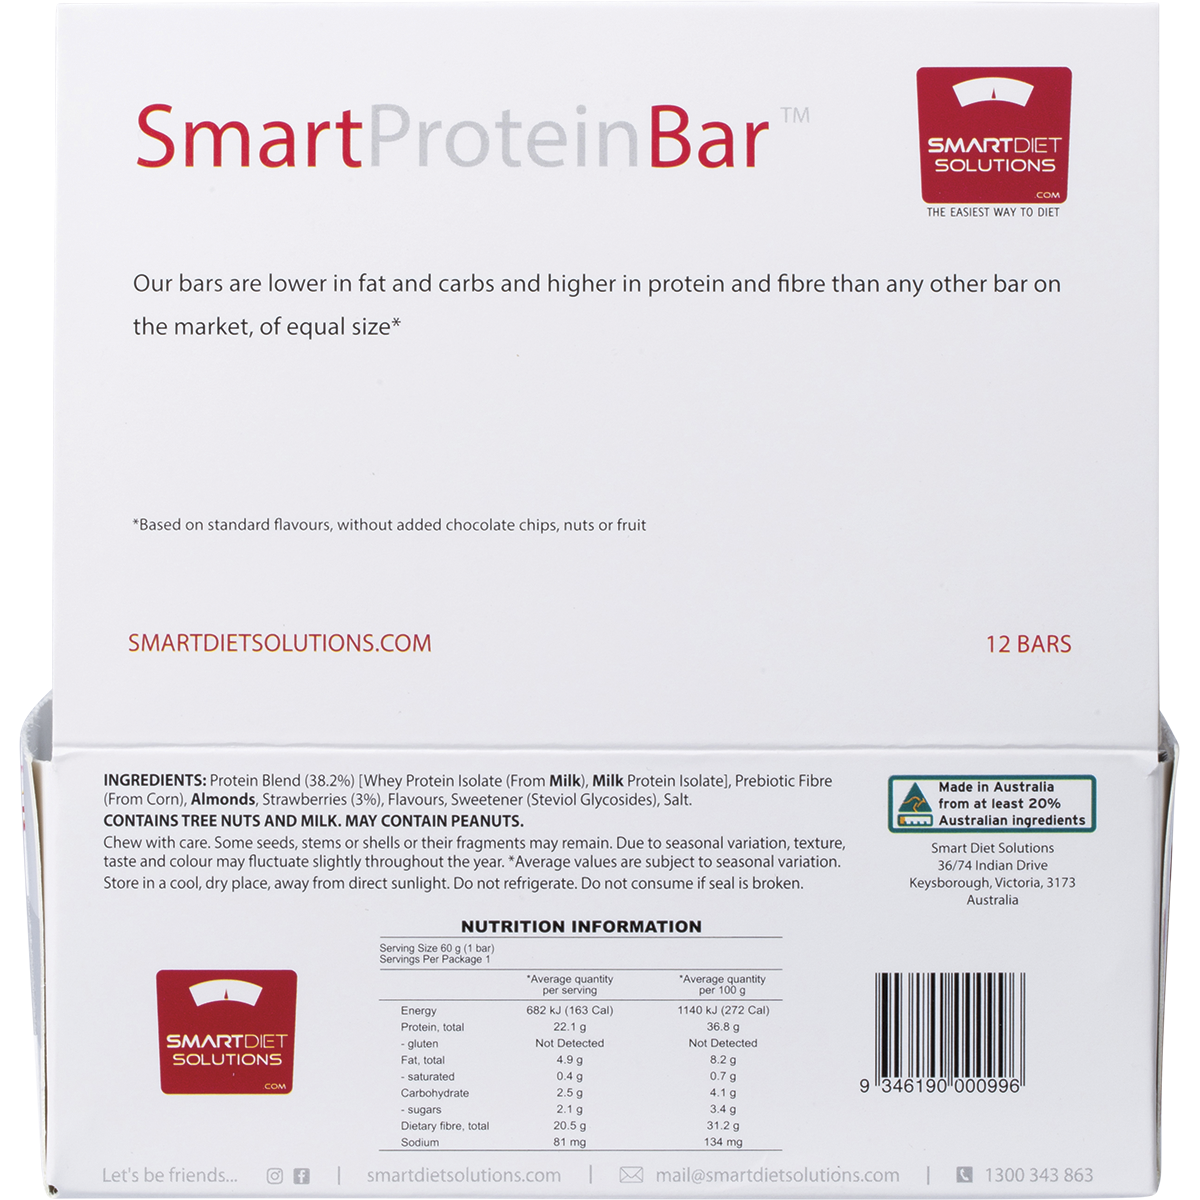 Smart Protein Strawberry Cheesecake Protein Bar 60g